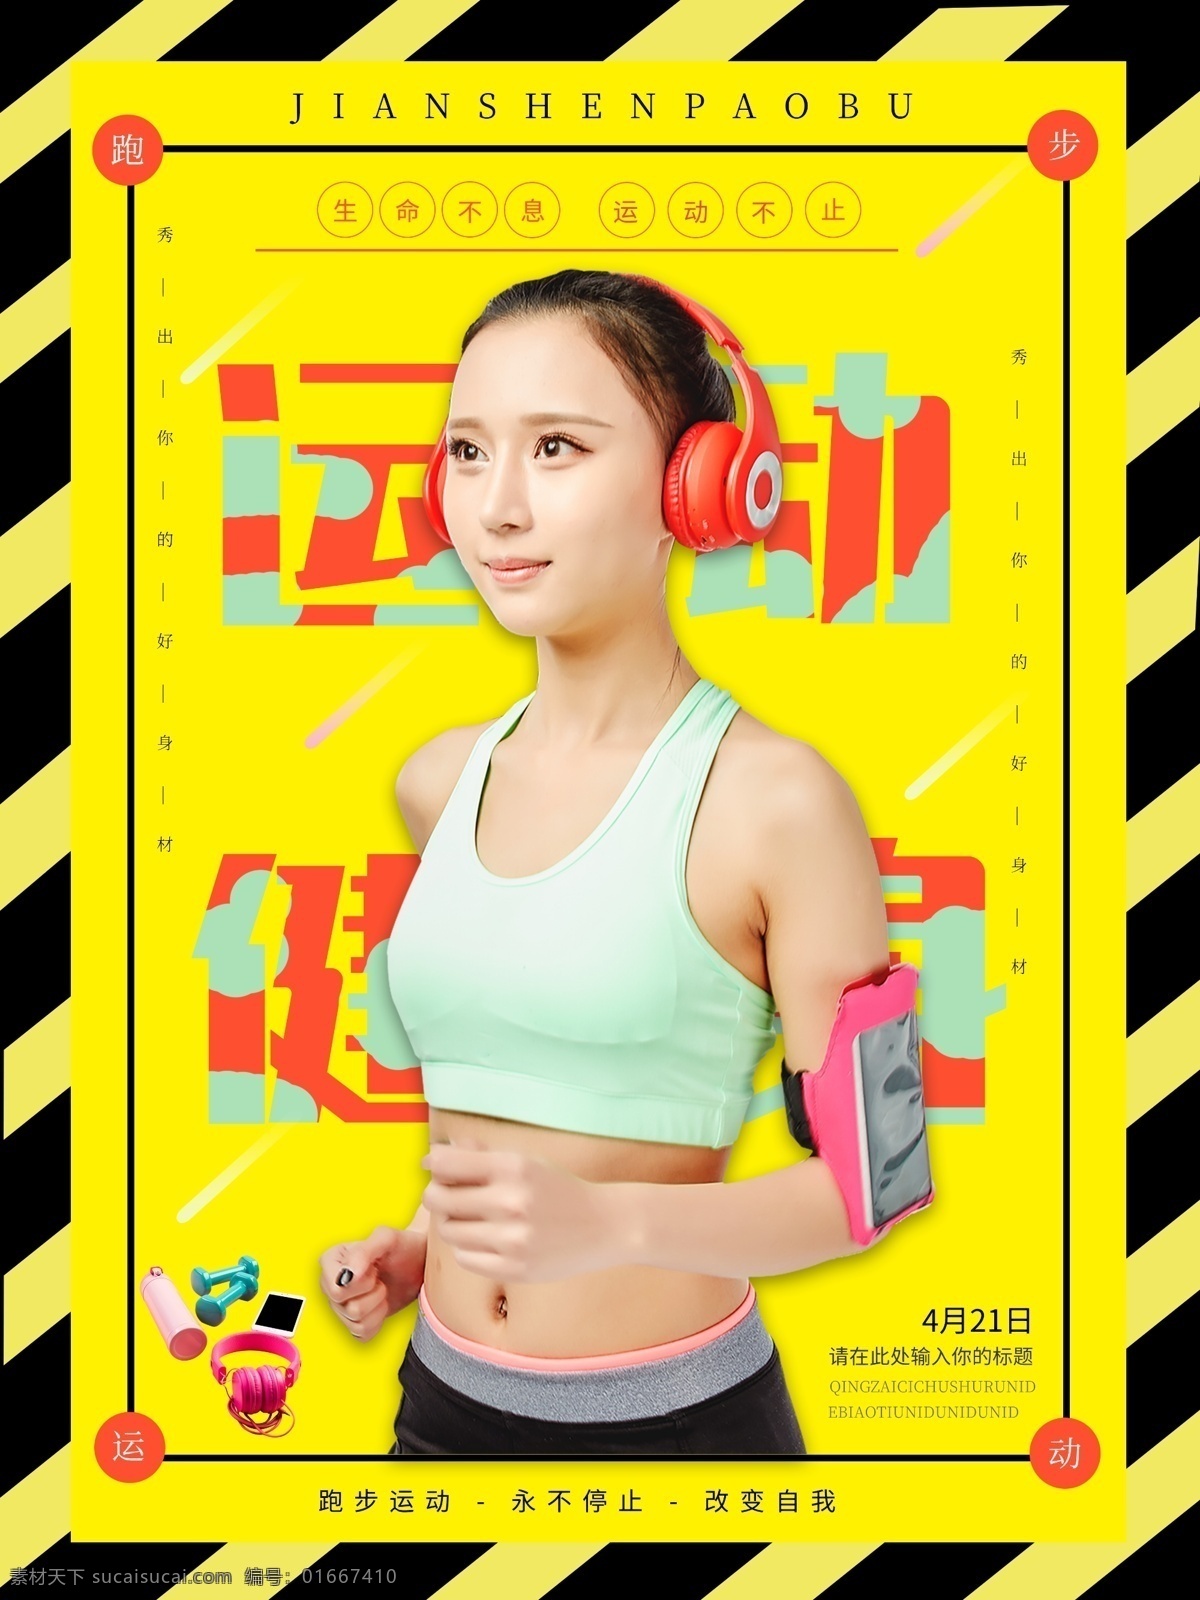 简约 时尚 黑金 风 健身 海报 创意海报 公益 健身运动 力量 锻炼 跑步运动